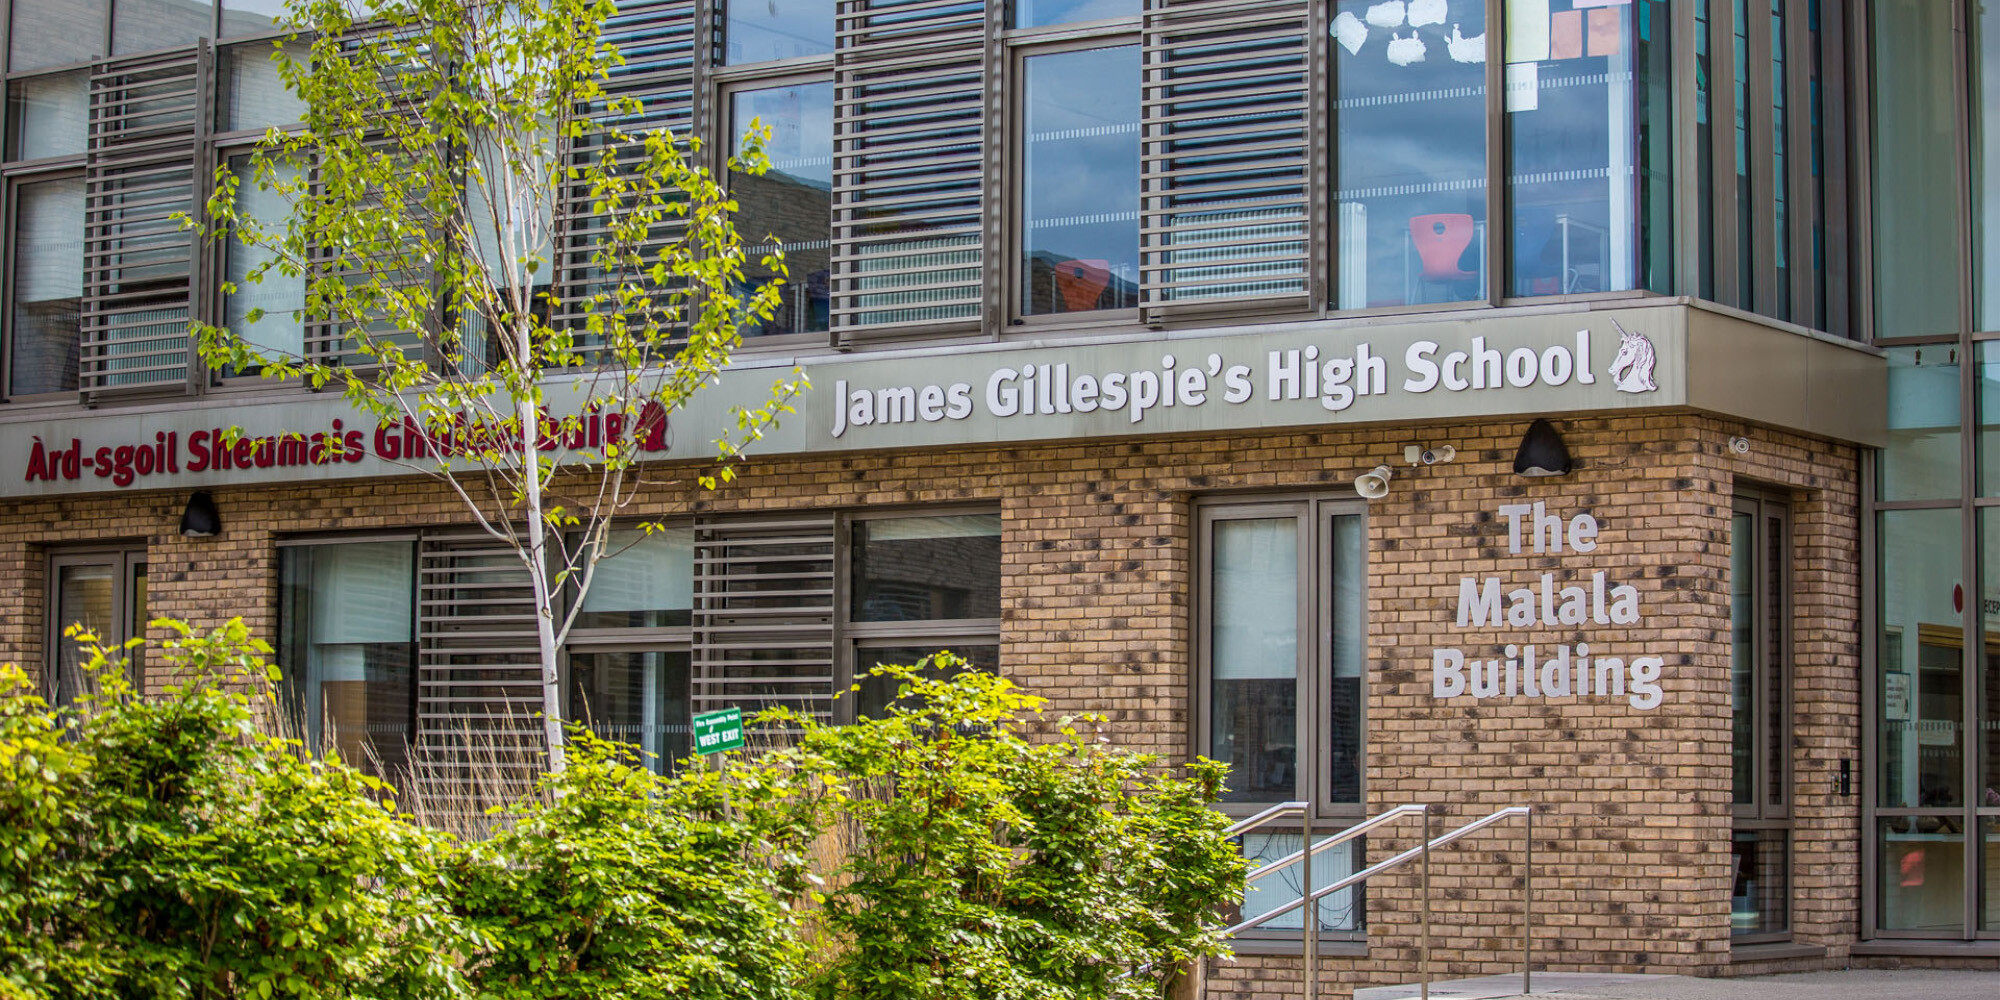 James Gillespie’s High School